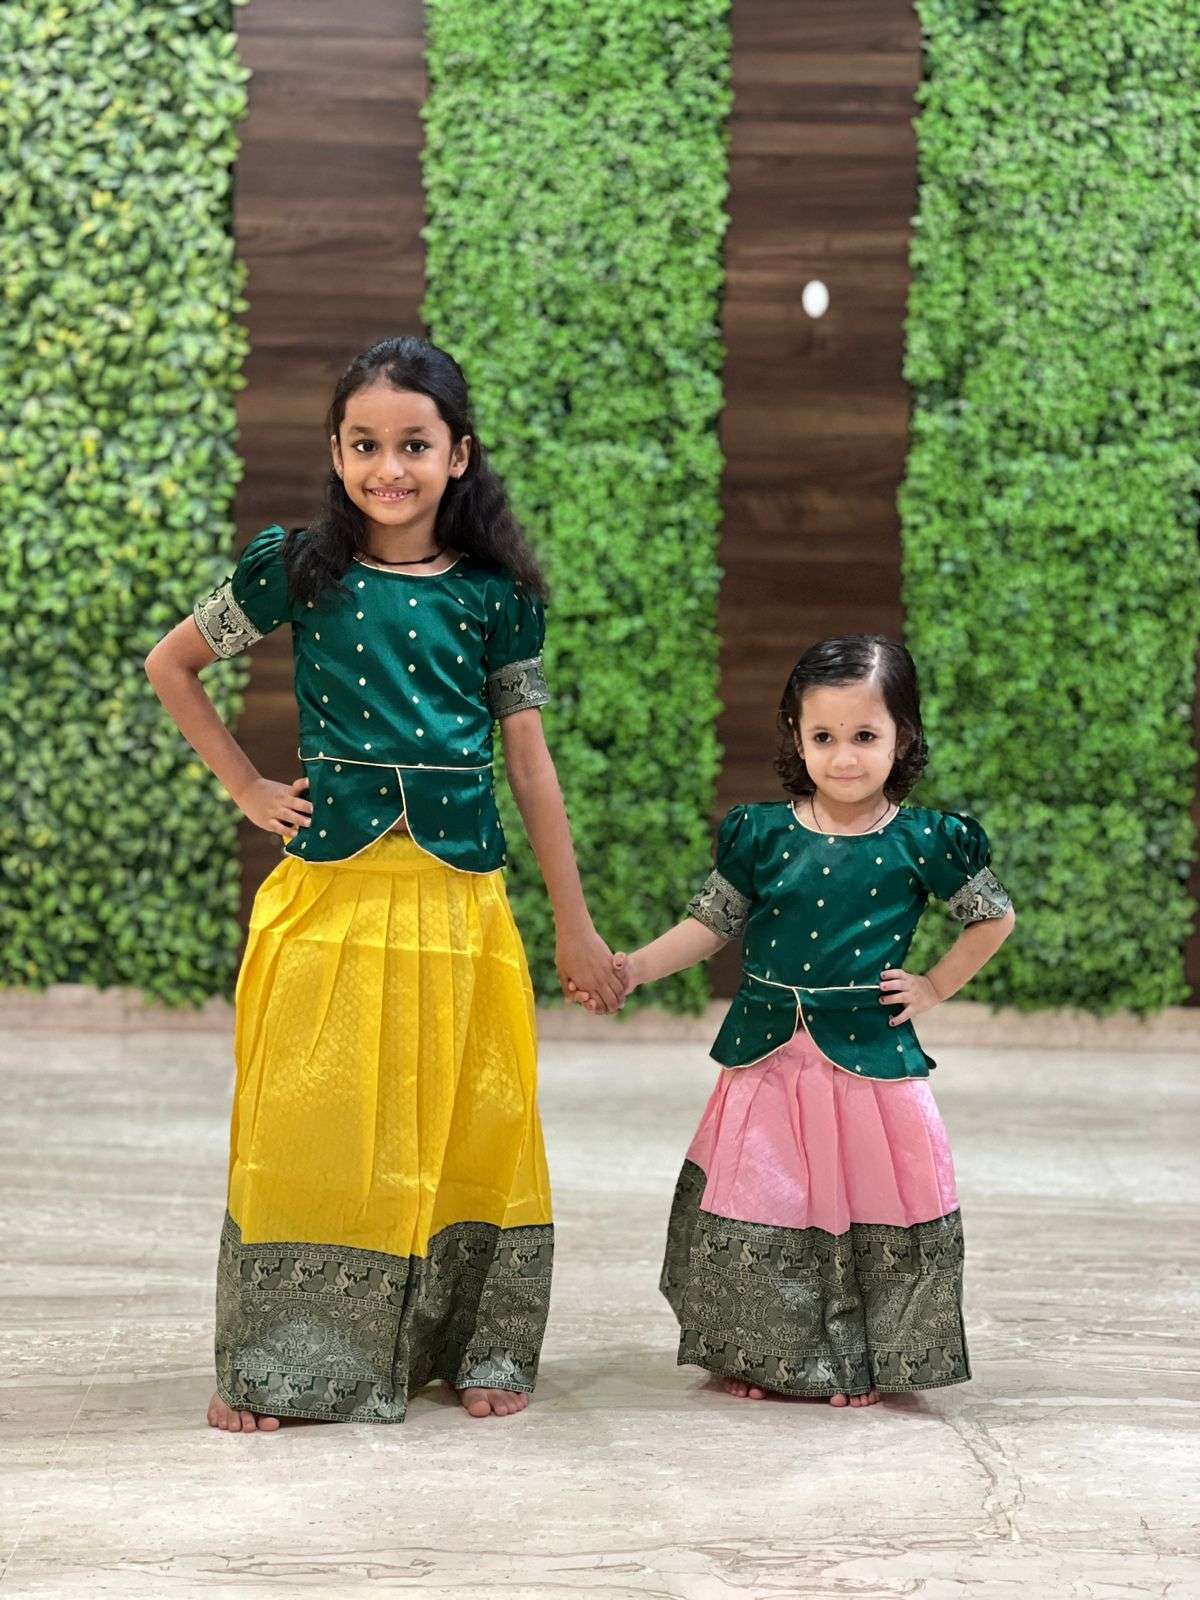 Pin by Ranjiniaravinth on Kids pattu pavadai models | Dresses kids girl,  Kids fashion dress, Girls frock design